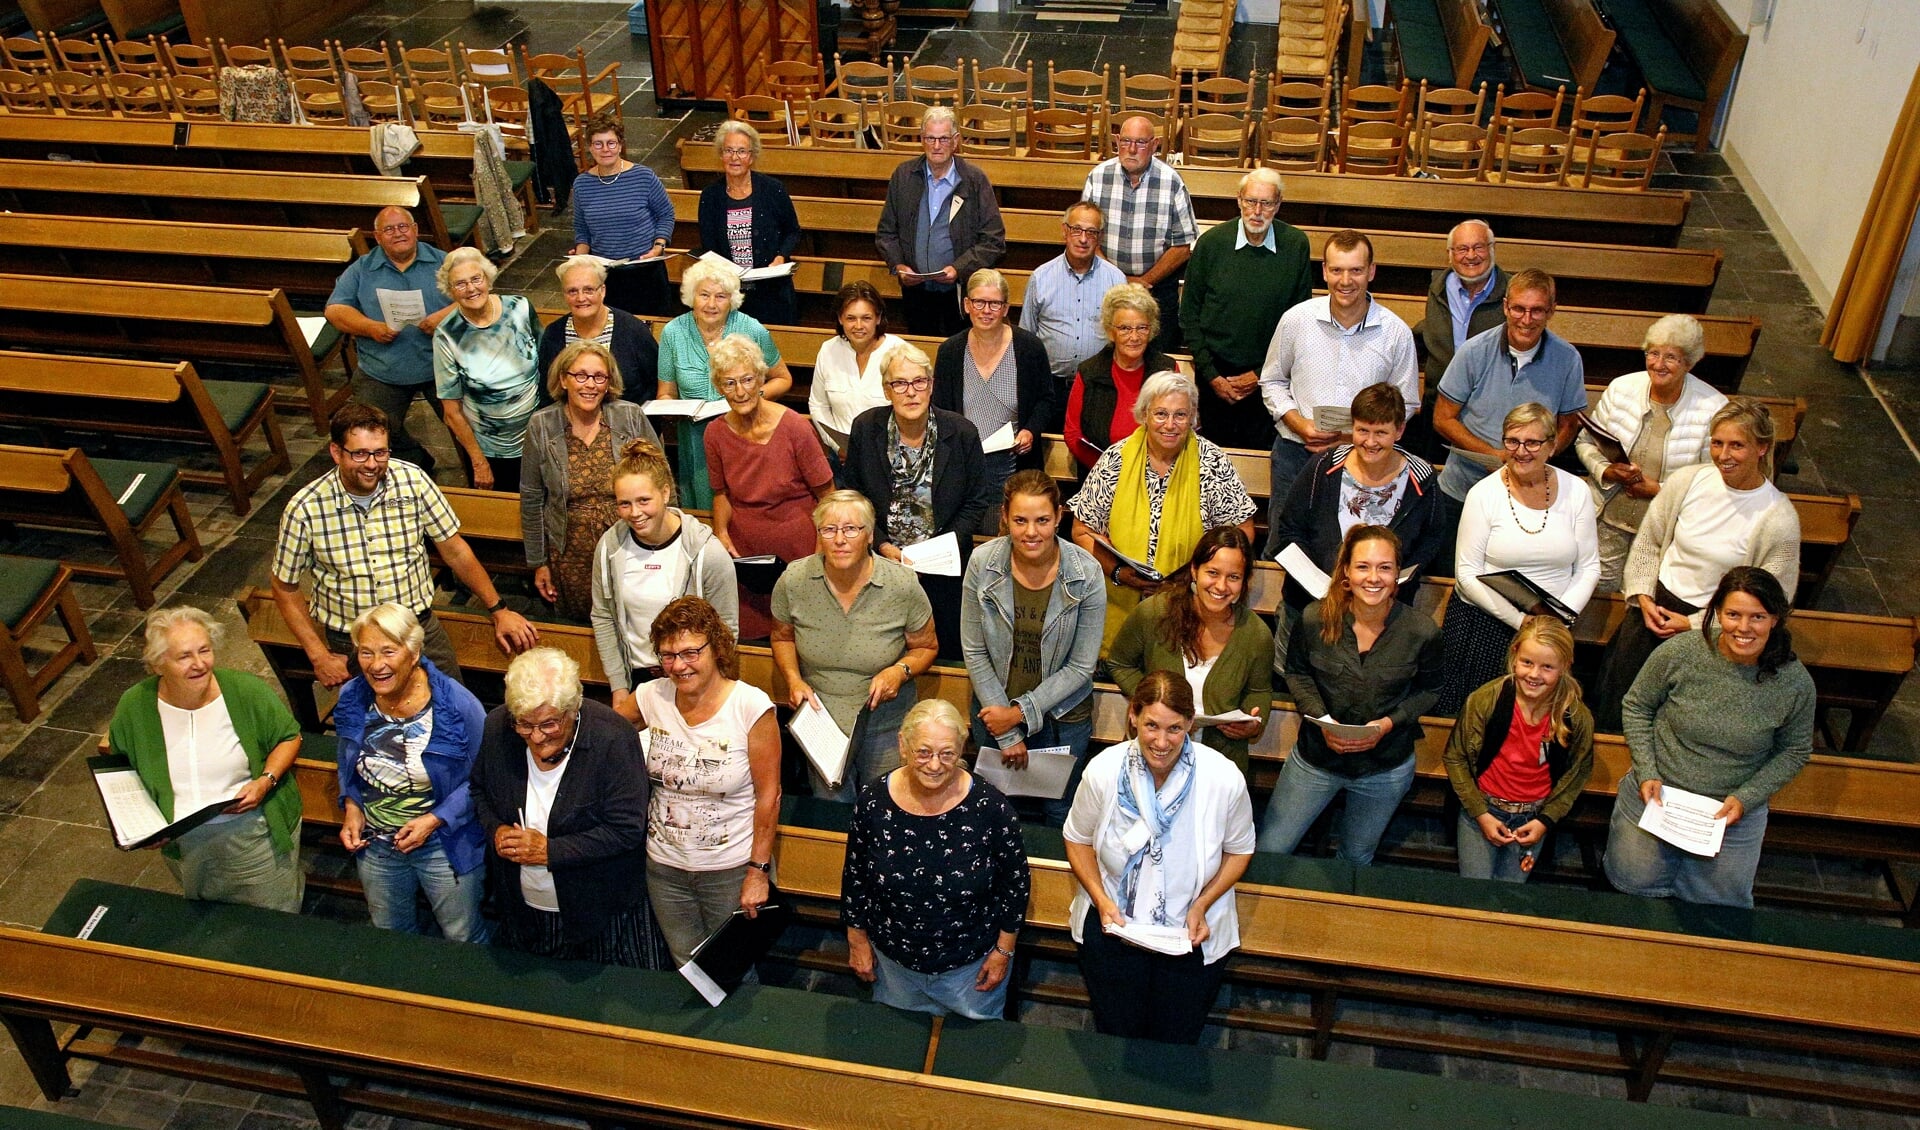 • De leden van koor De Lofstem, dinsdagavond tijdens de repetitie in de kerk van Oud-Alblas.